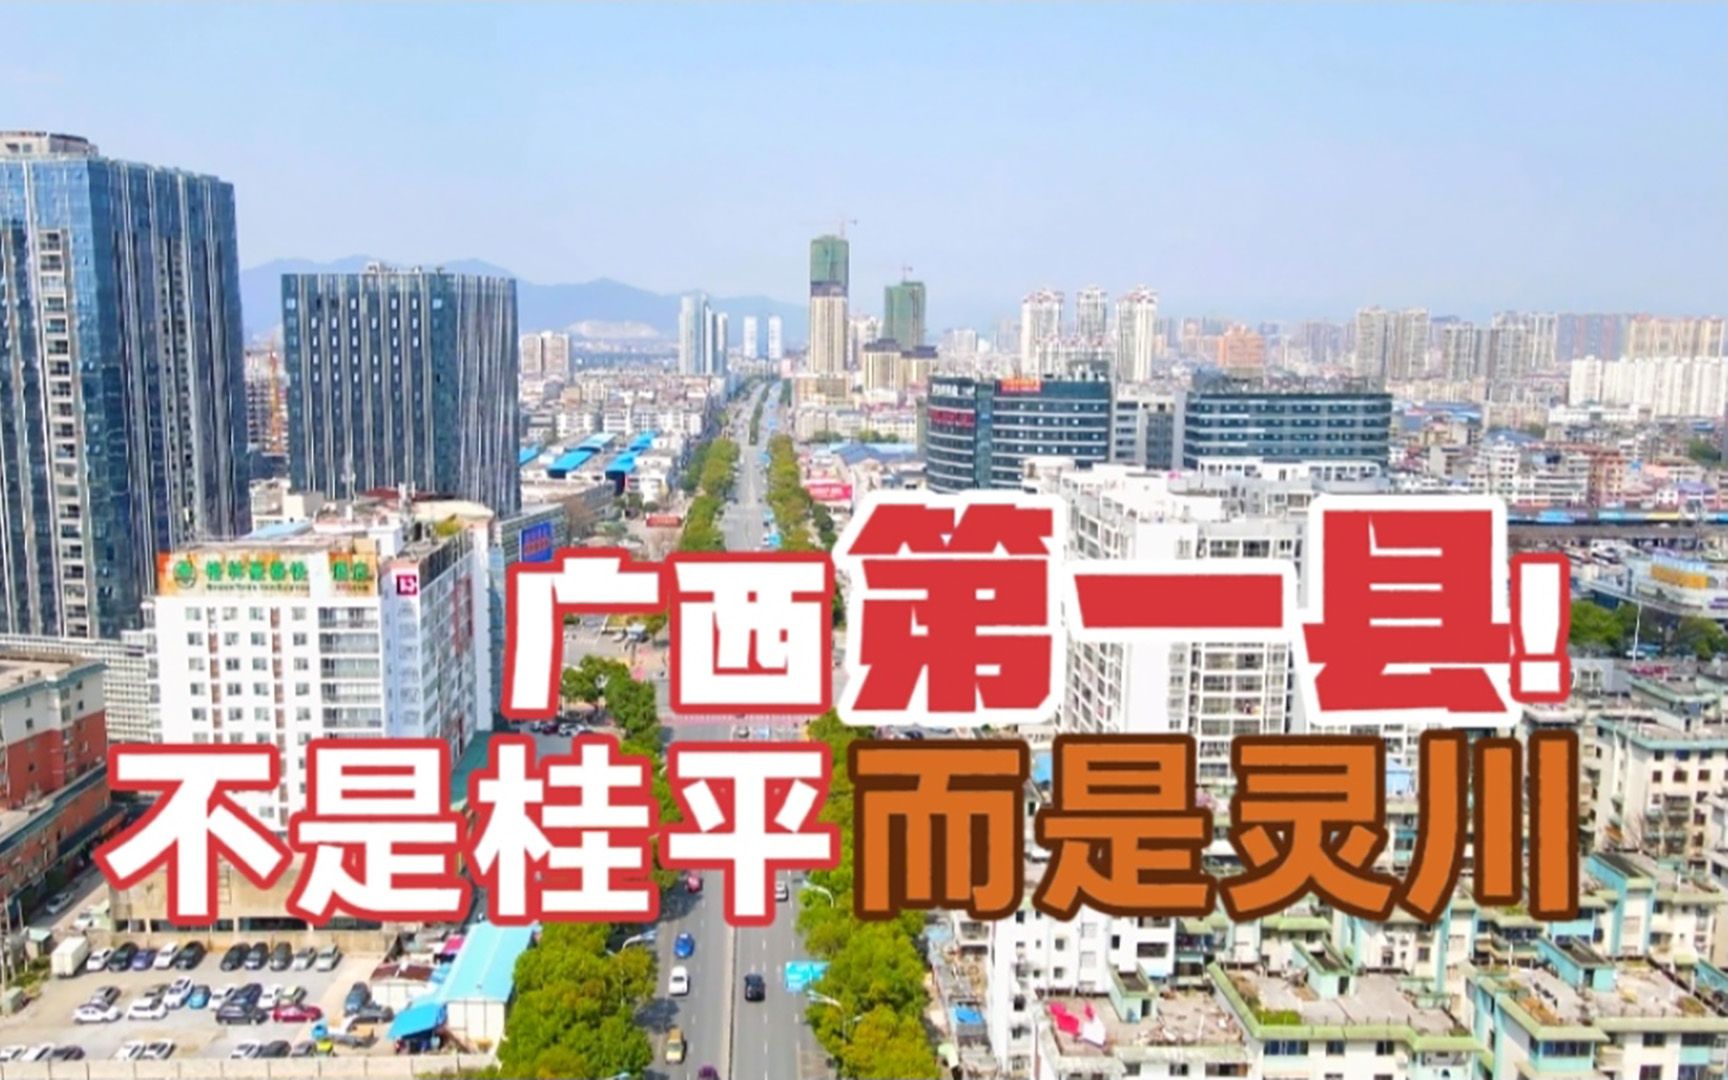 一镜到底全景来了 带你快速了解“广西第一大县”桂林市灵川县